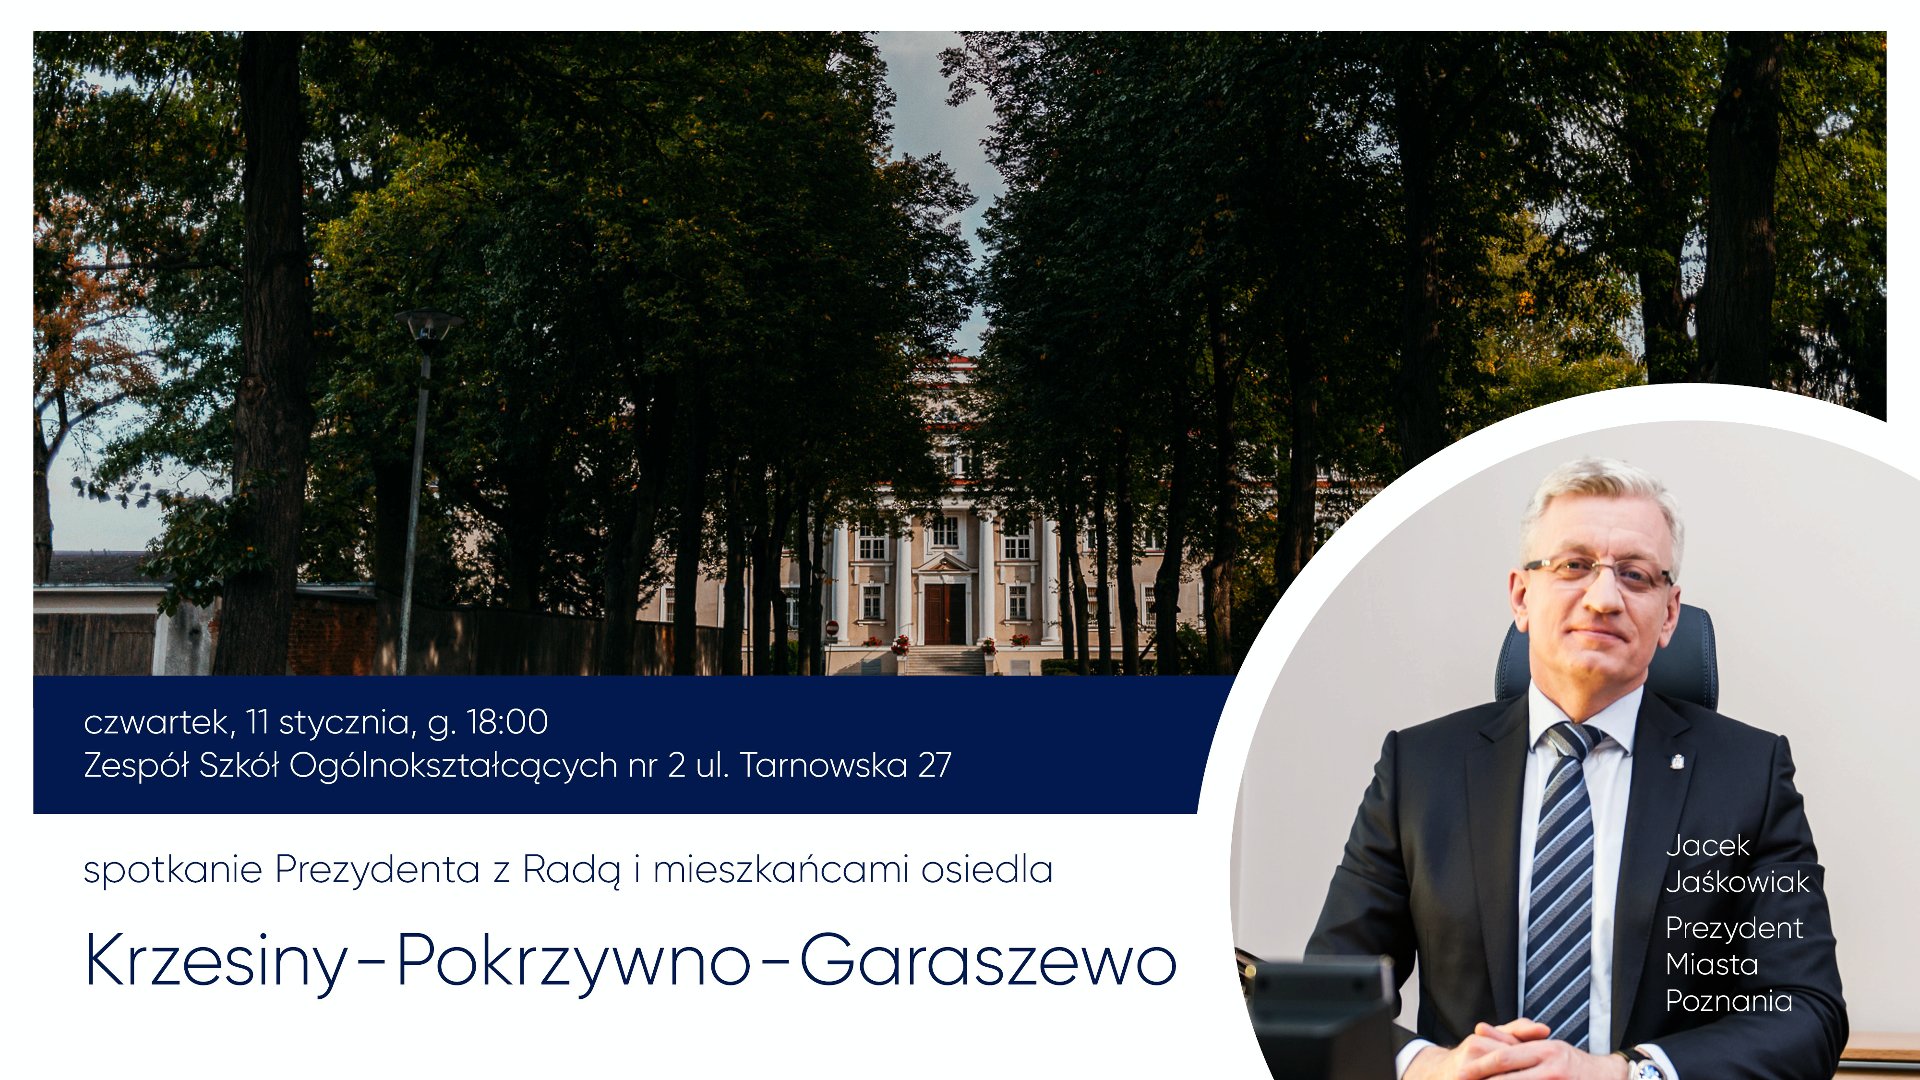 Spotkanie Prezydenta Miasta Poznania z mieszkańcami rozpocznie się o godz. 18.00 - grafika artykułu